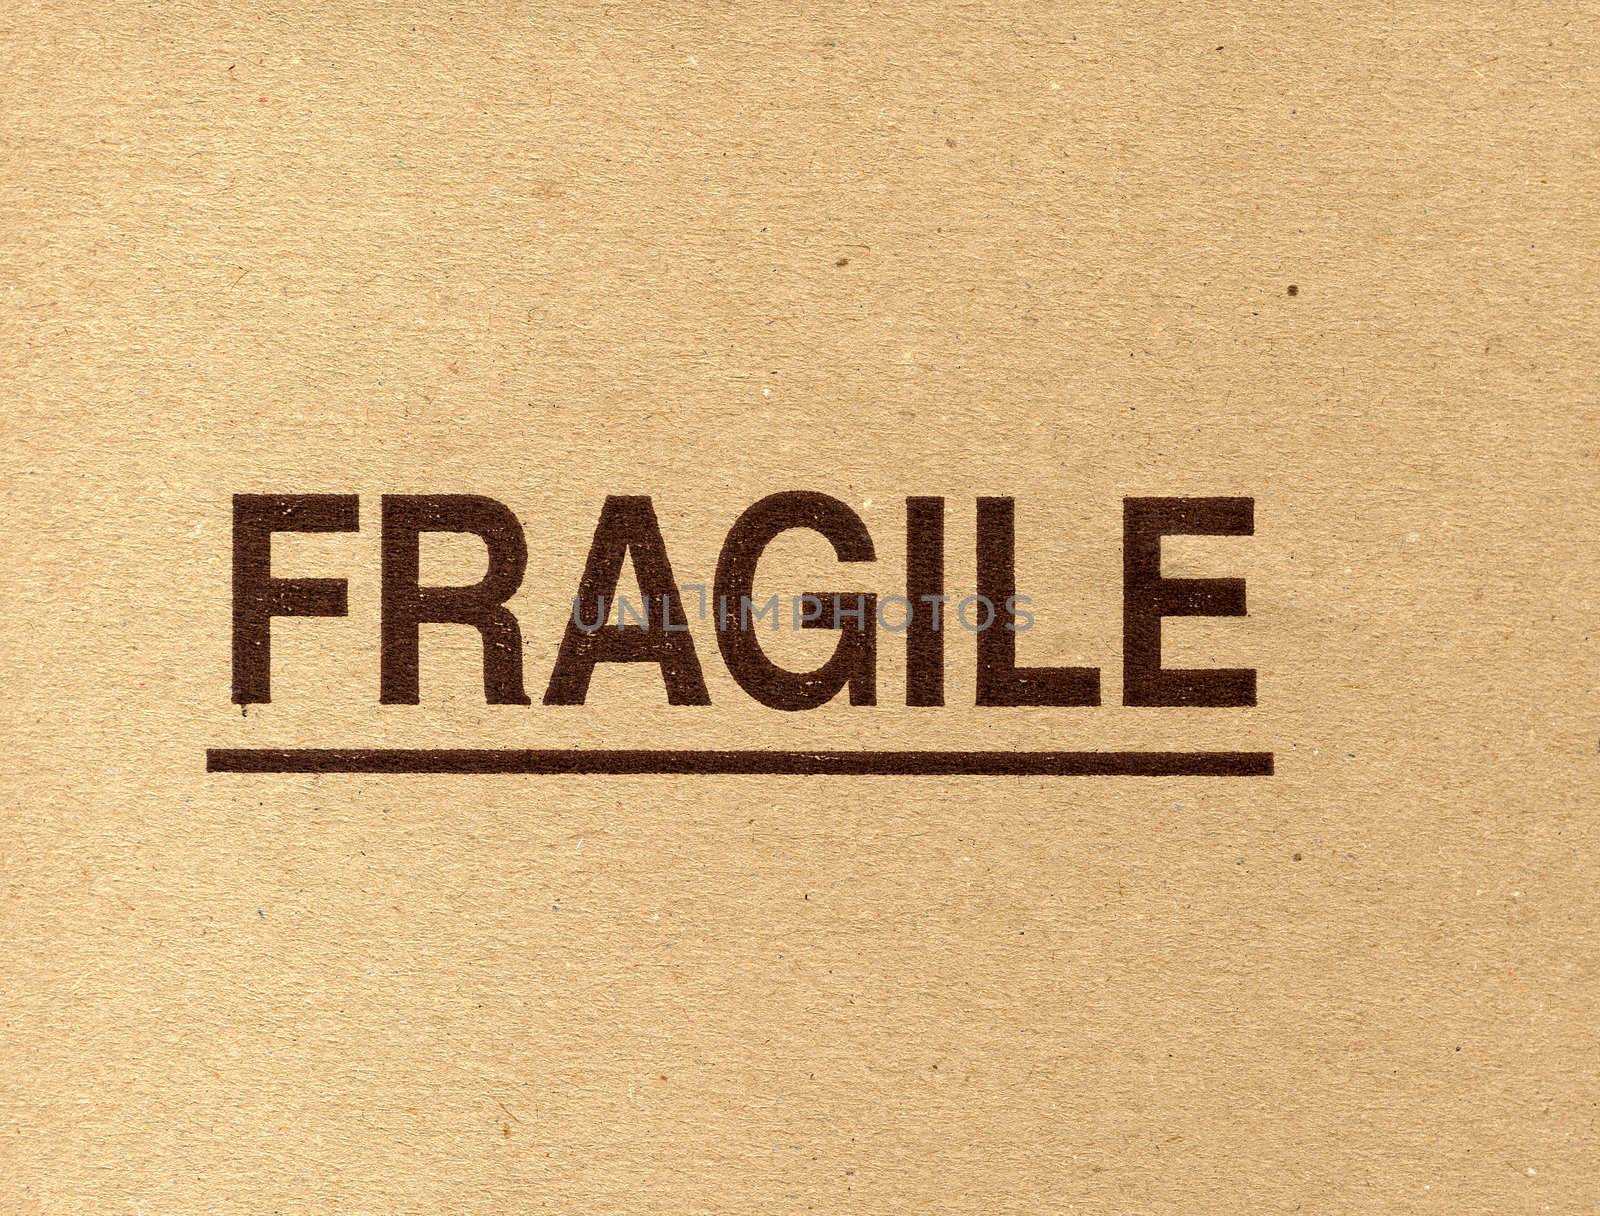 Fragile corrugated cardboard packet